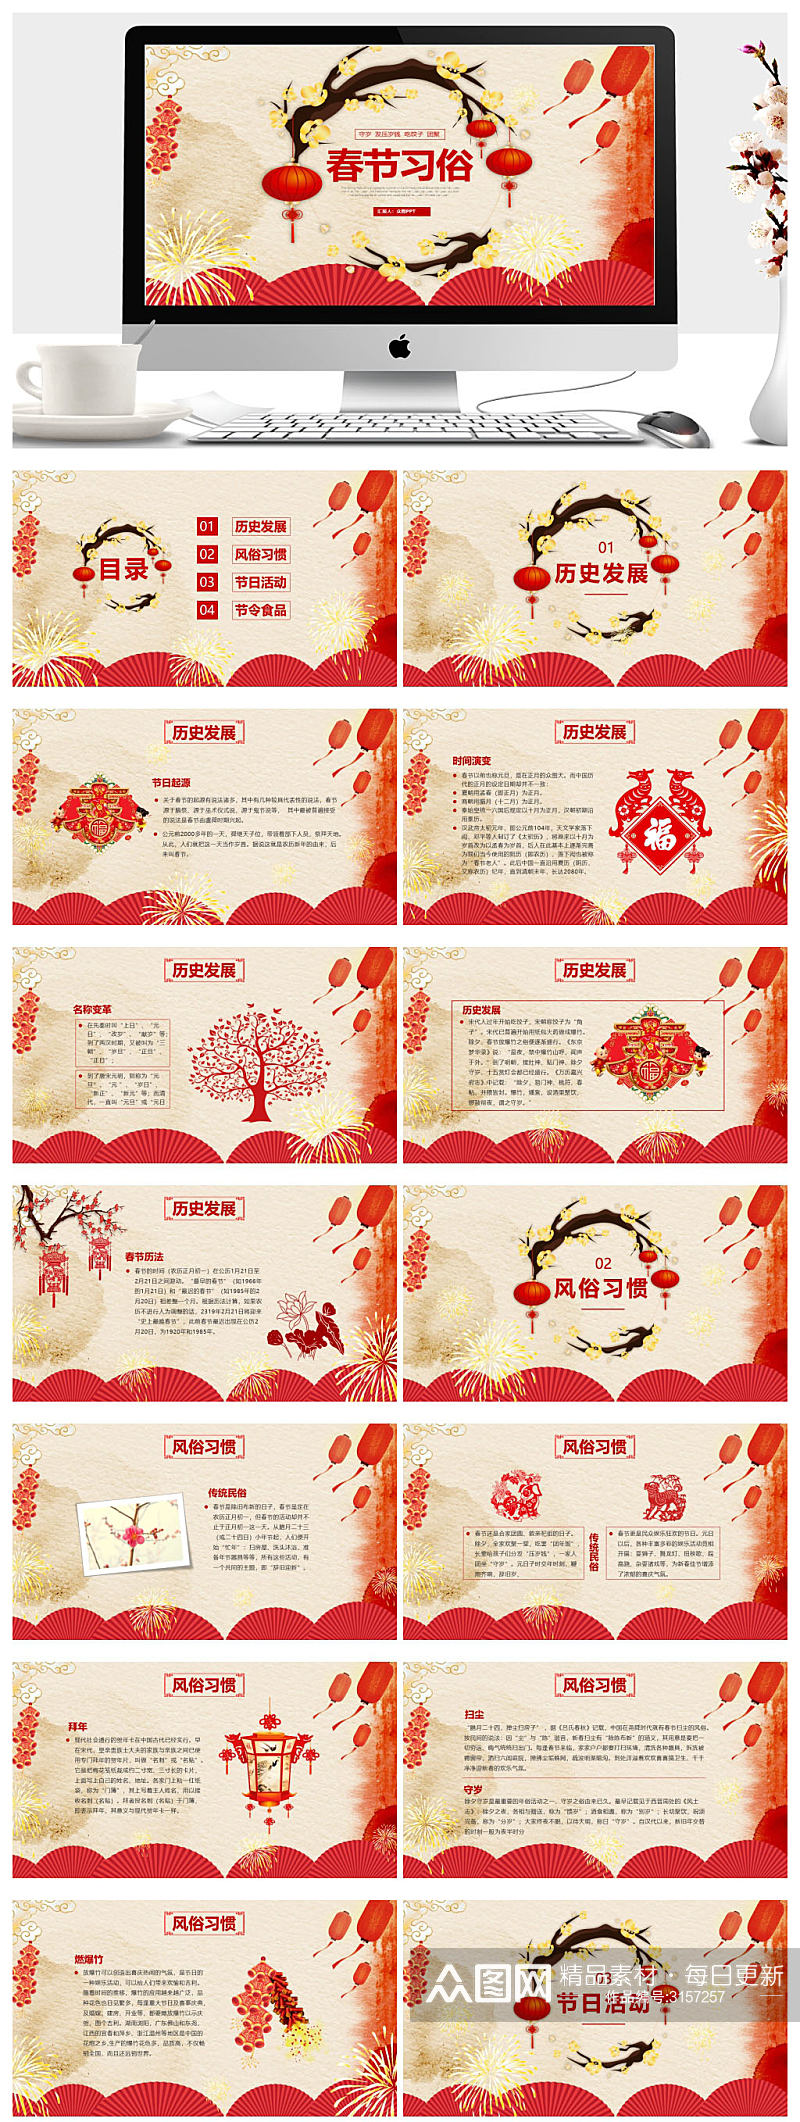 中国春节传统习俗介绍PPT下载素材